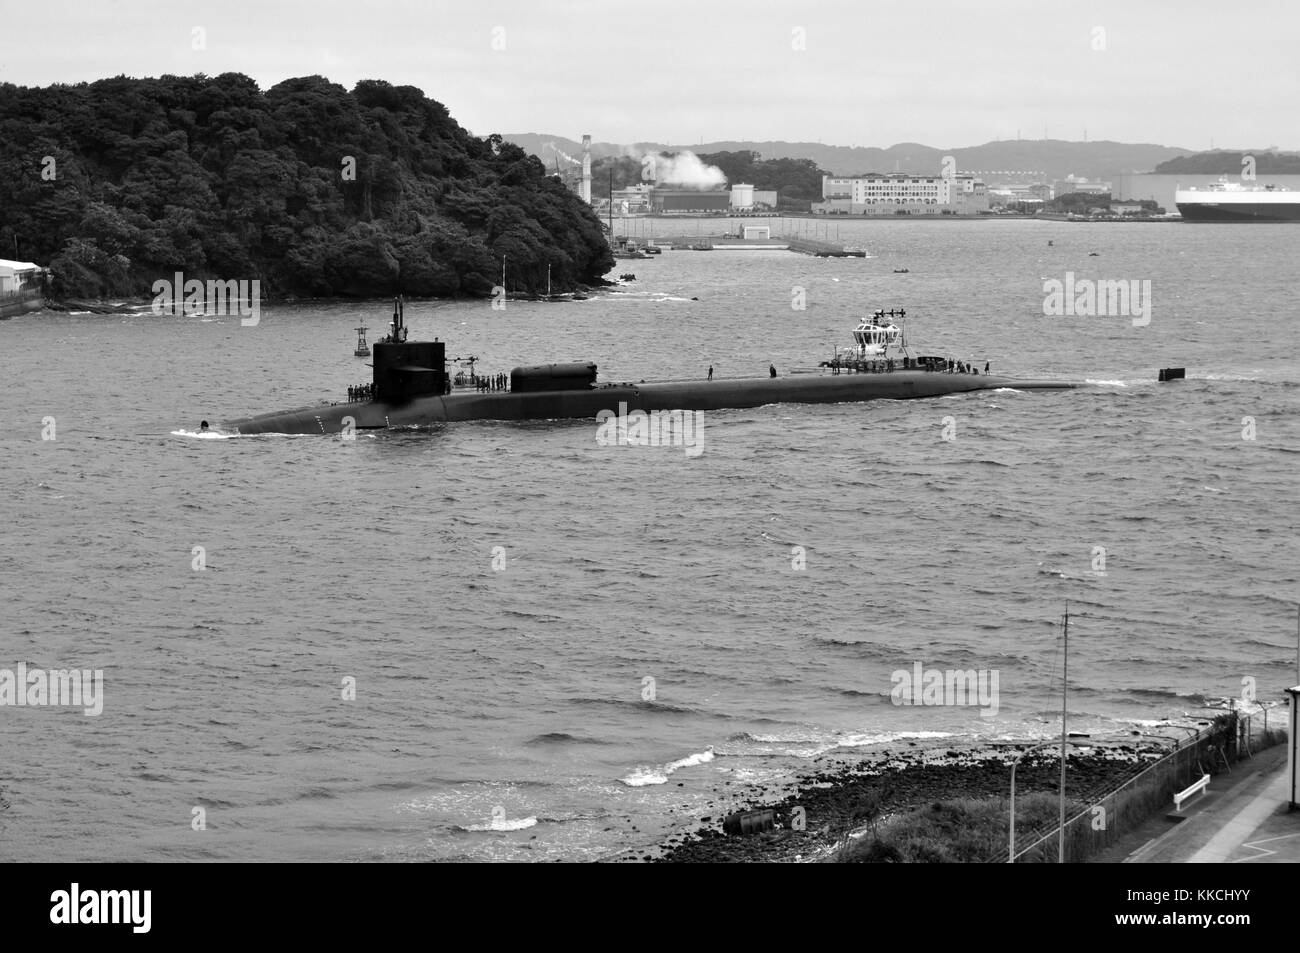 La ohio-class guidato-missile submarine uss michigan ssgn 727 arriva a le attività della flotta yokosuka come parte della sua distribuzione per il Pacifico occidentale, Yokosuka, Giappone, 2012. Immagine cortesia la comunicazione di massa specialista di prima classe david mercil/us navy. Foto Stock